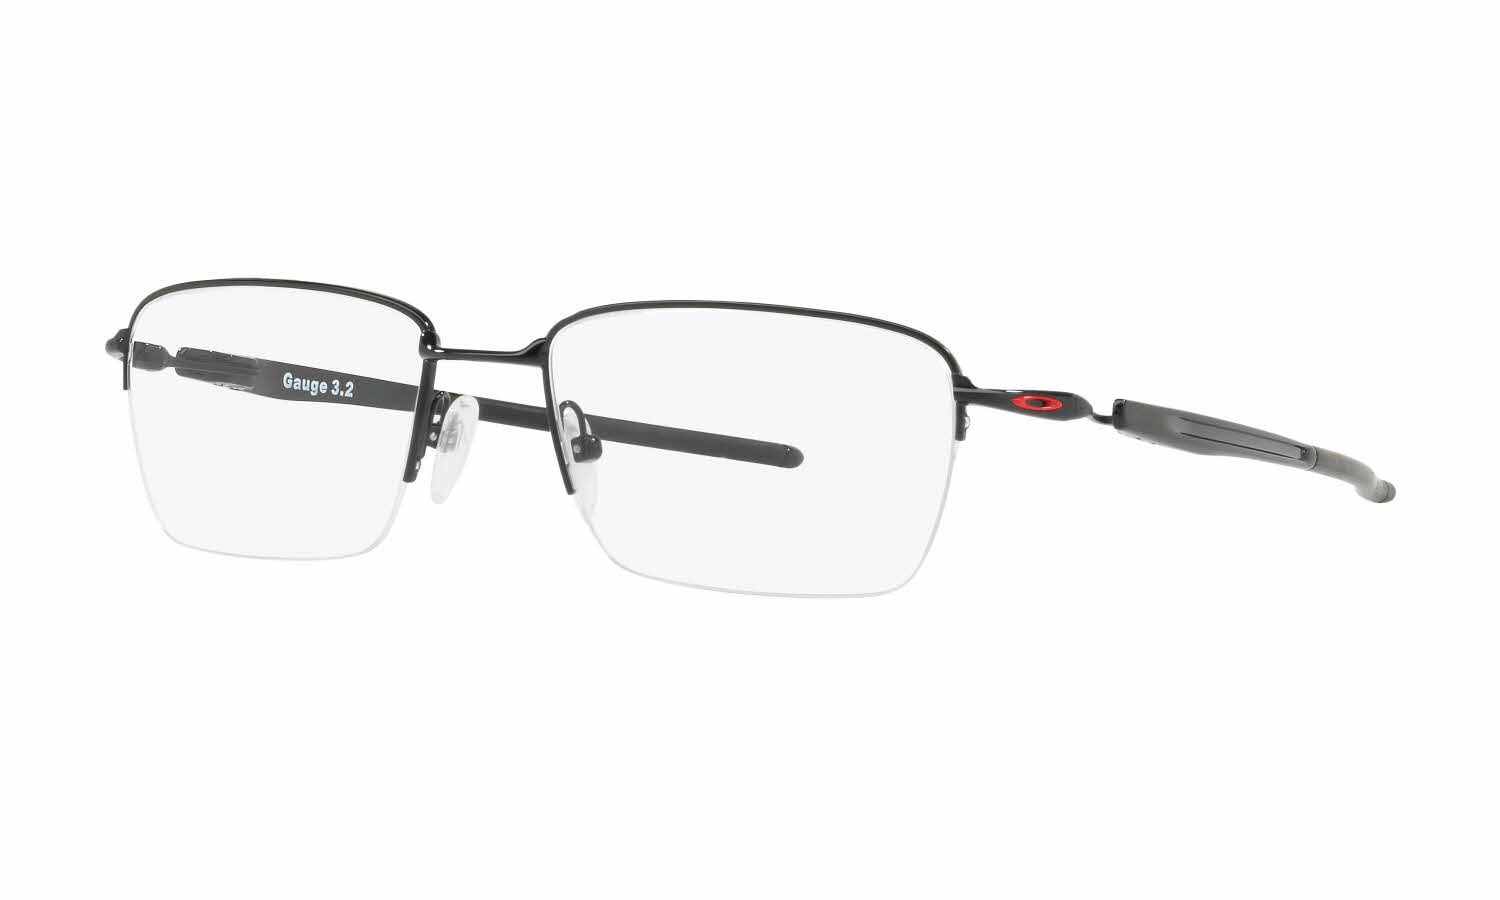 Oakley Gauge 3.2 Blade Eyeglasses